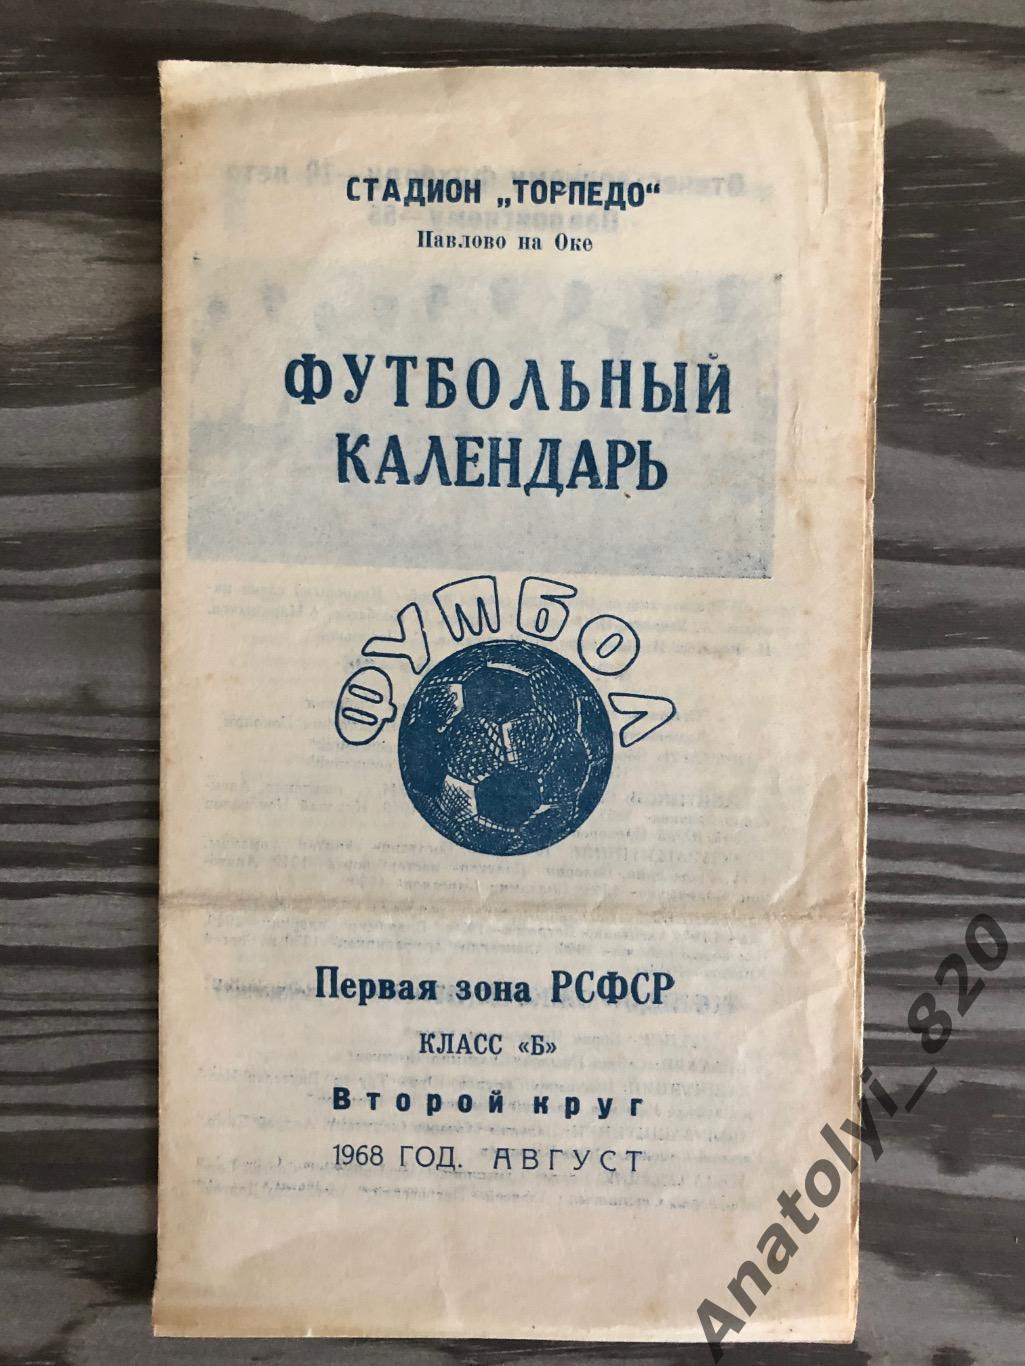 Торпедо Павлово-на-Оке буклет, футбольный календарь 1968 год